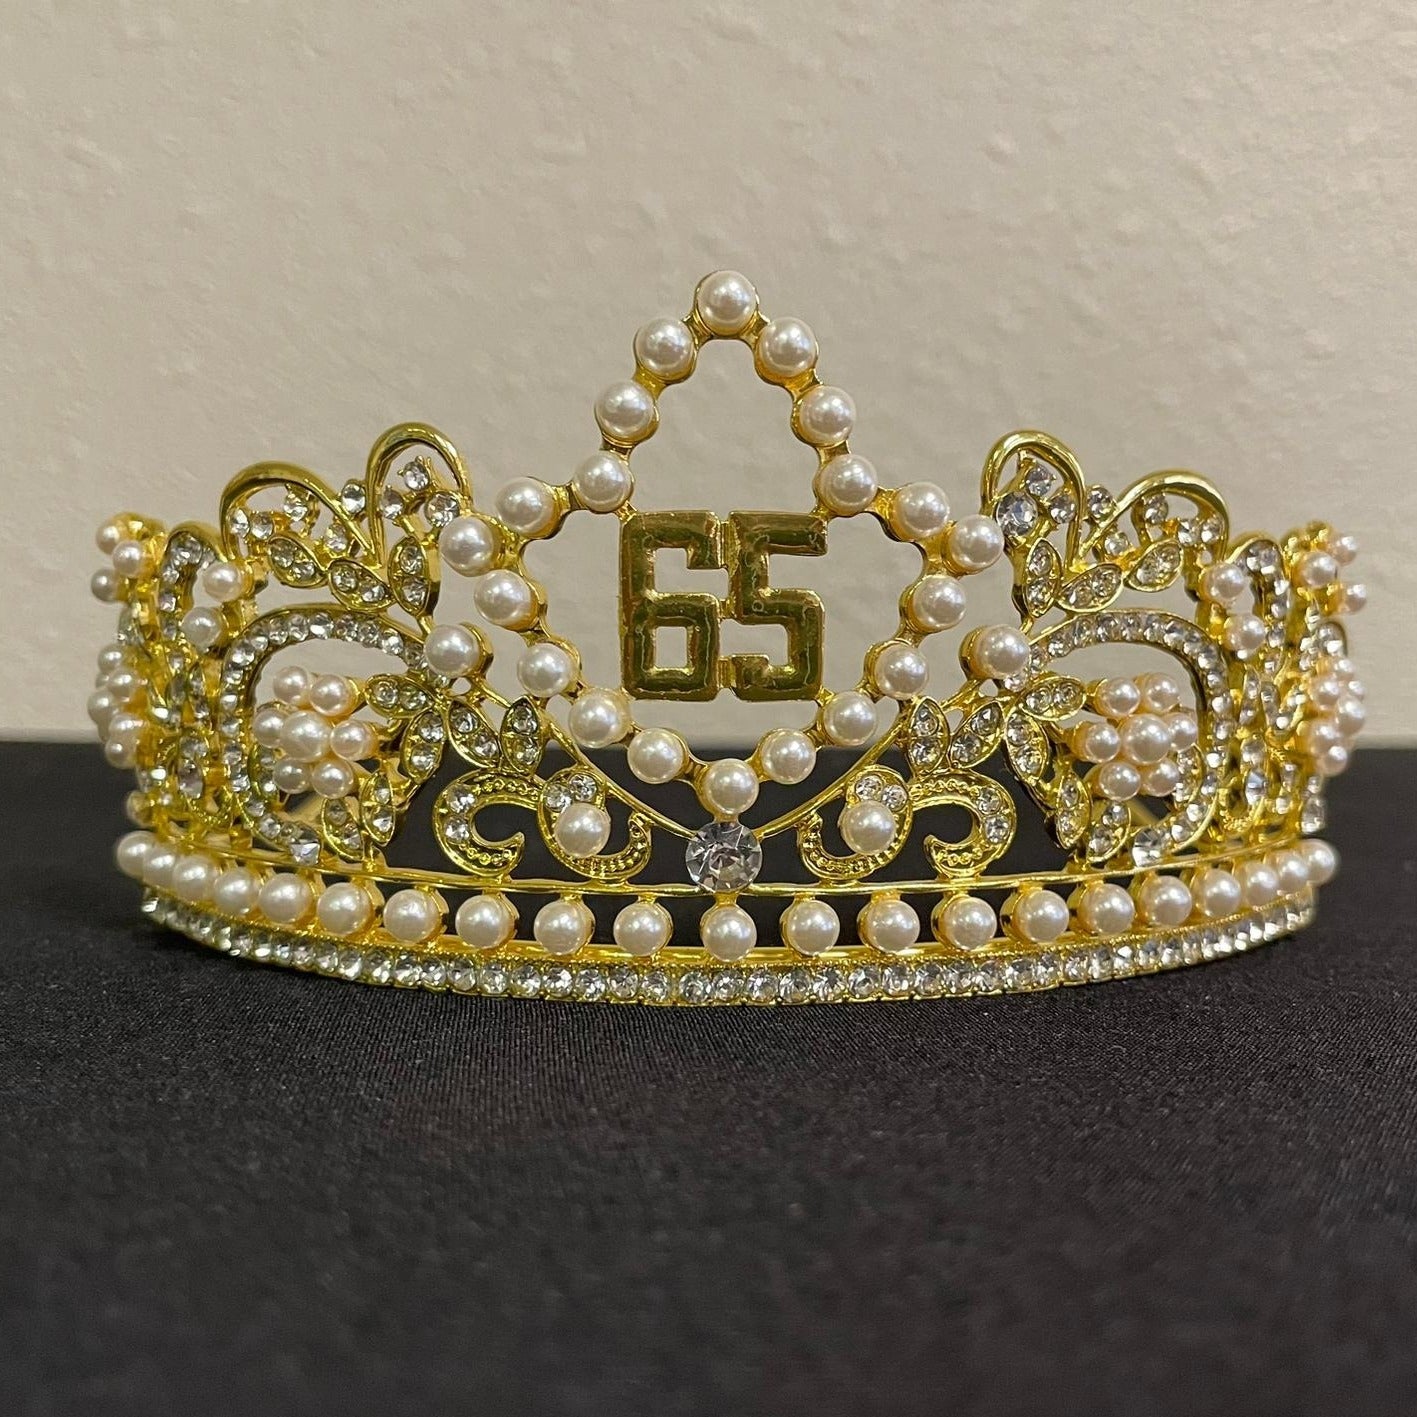 Crown 65